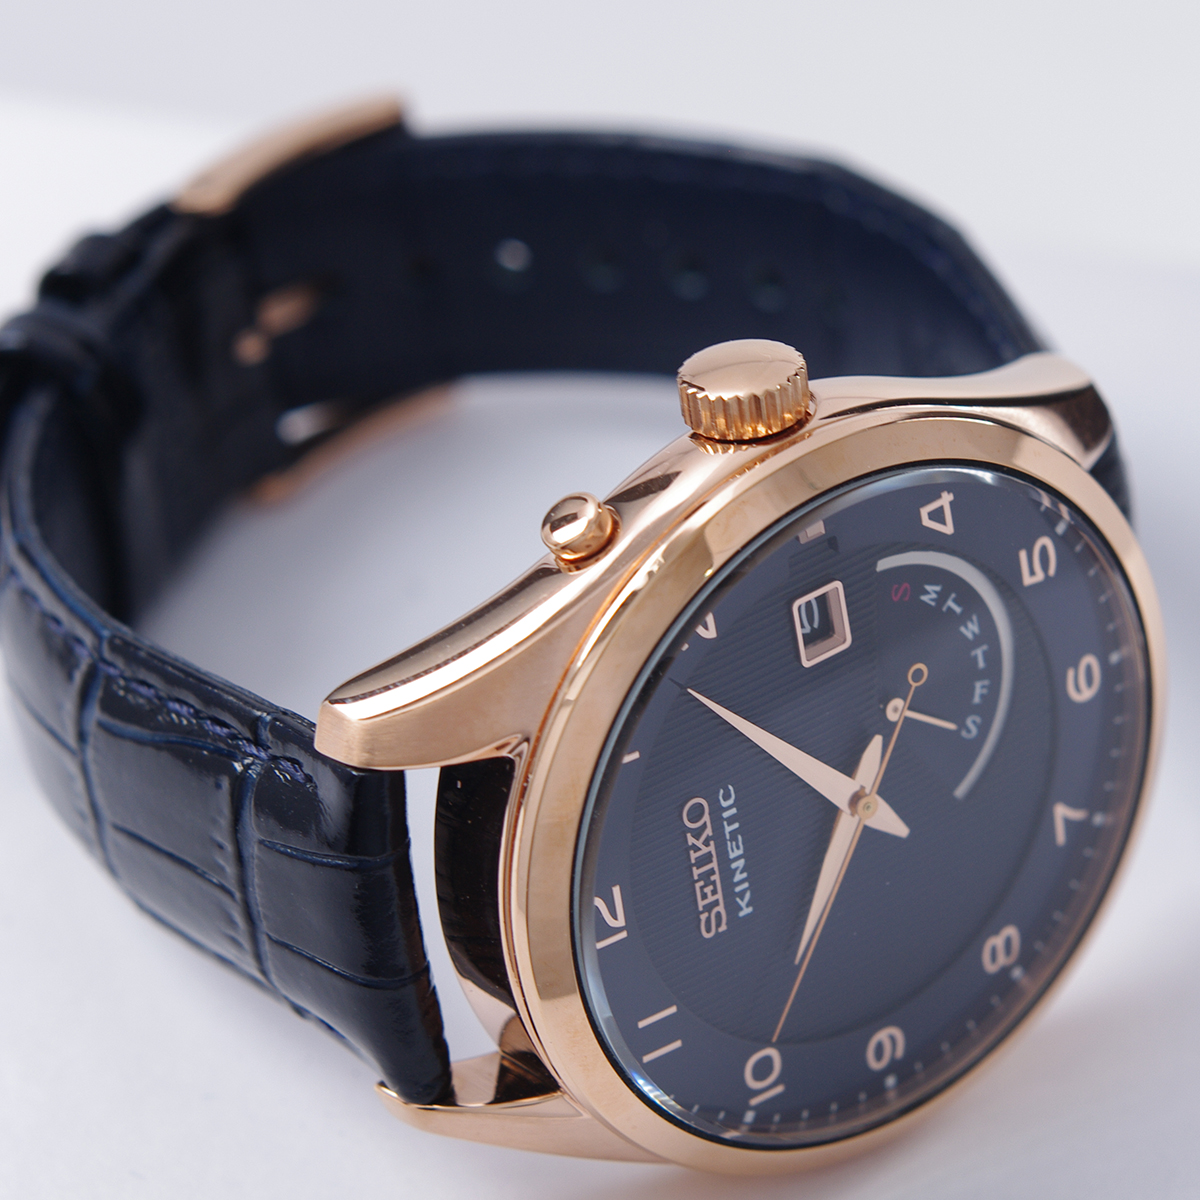 セイコー SEIKO 腕時計 海外モデル KINETIC キネティック レトログラード ネイビー文字盤 SRN062P1 メンズ [逆輸入品] |  アッキーインターナショナル